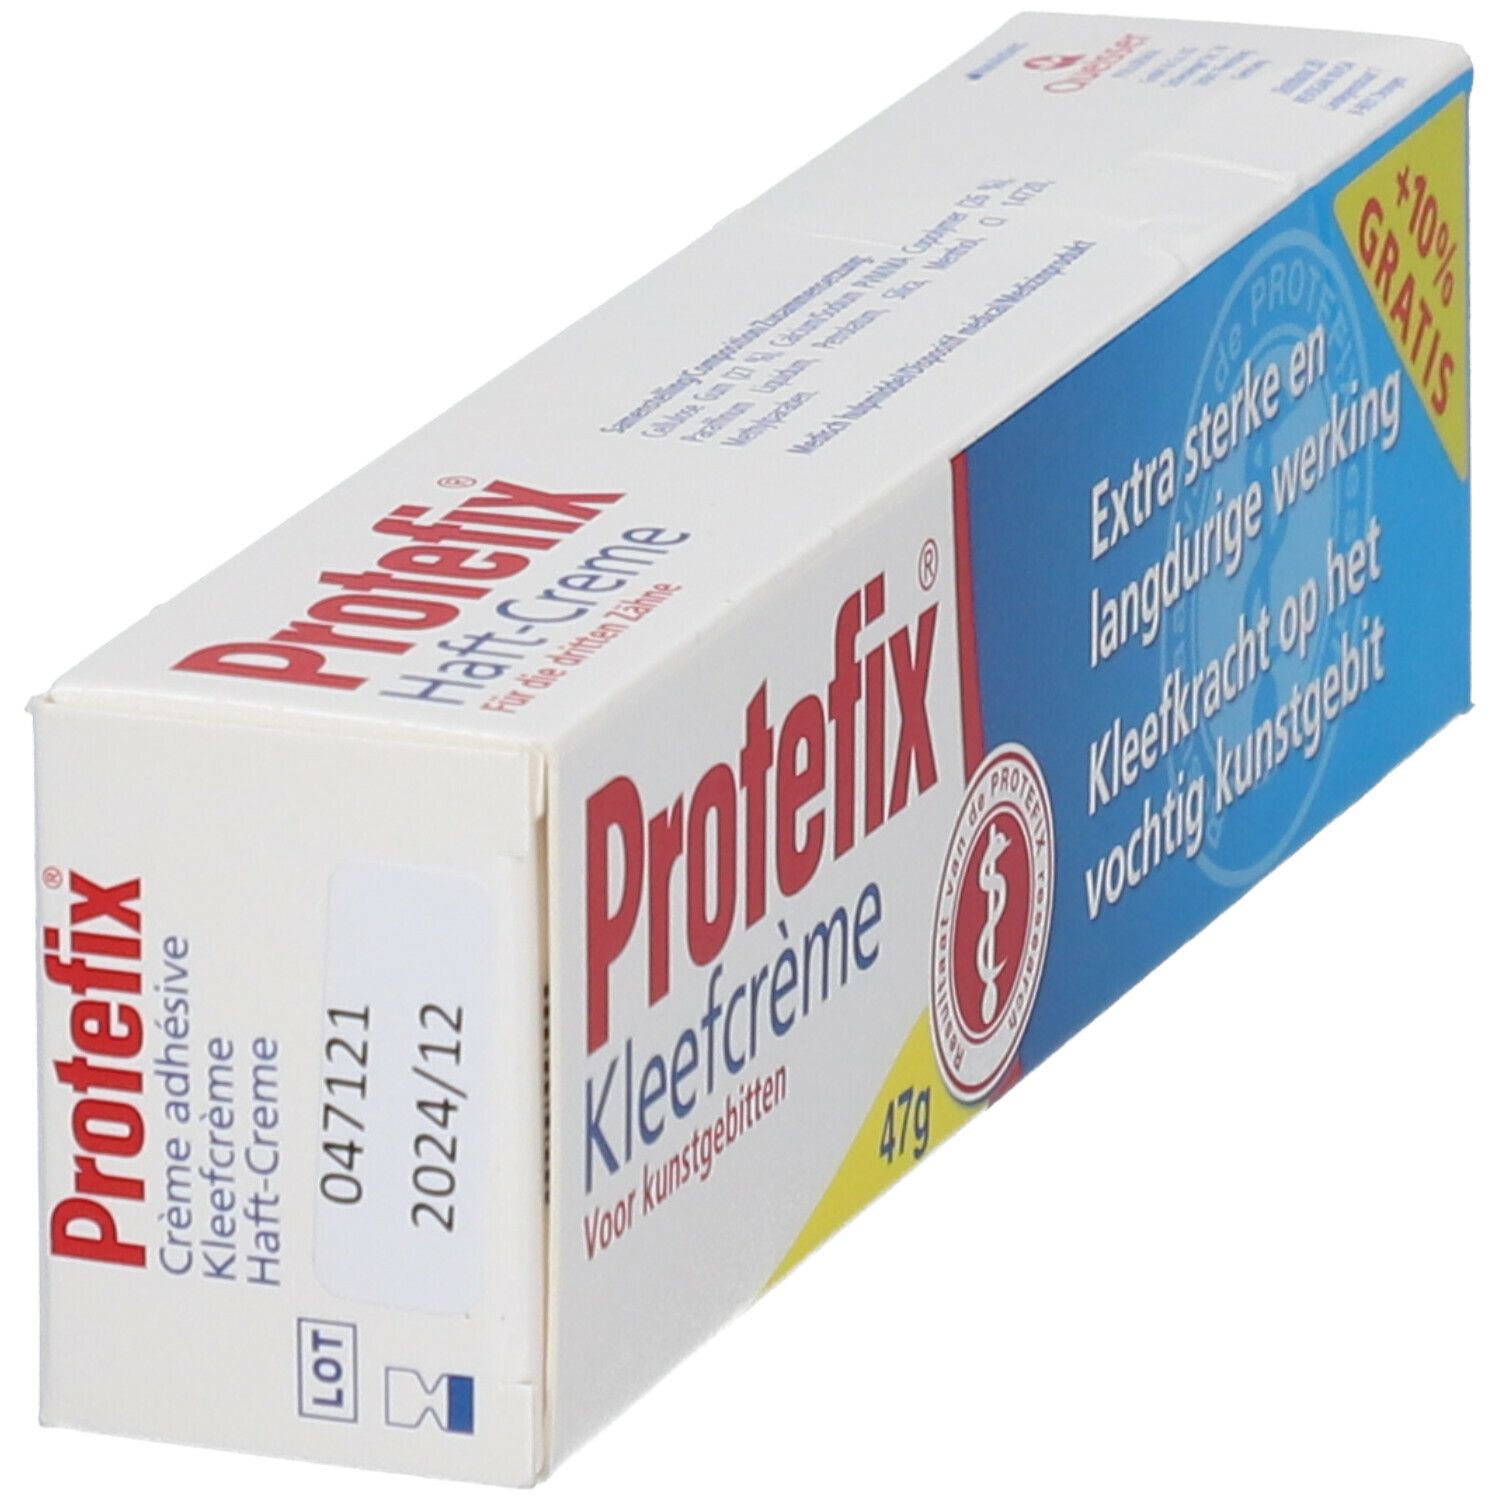 Protefix Crema Adesiva Extra-Forte 47g + 4 ml Omaggio